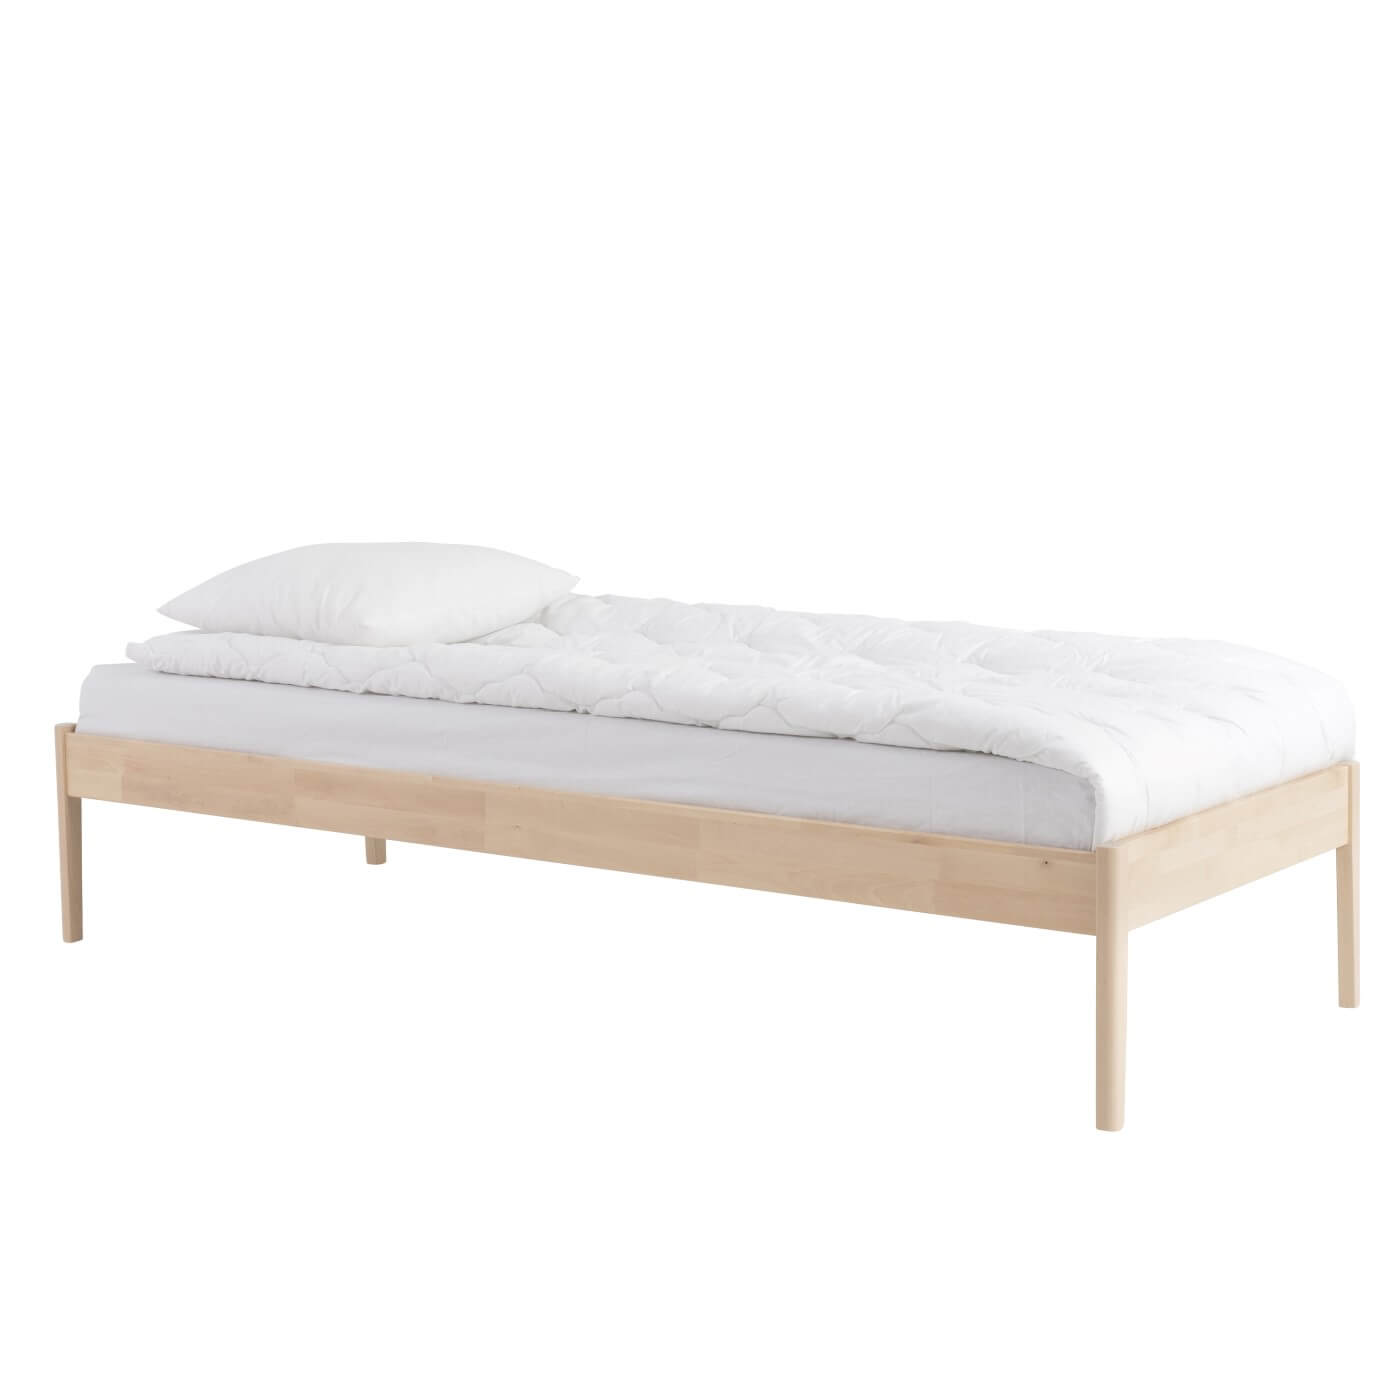 Łóżko drewniane bez zagłówka AVANTI z materacem 90x200, białą kołdrą i poduszką. Łóżko na wysokich prostych nóżkach z litego drewna brzozy skandynawskiej widoczne w całości. Nowoczesny skandynawski design